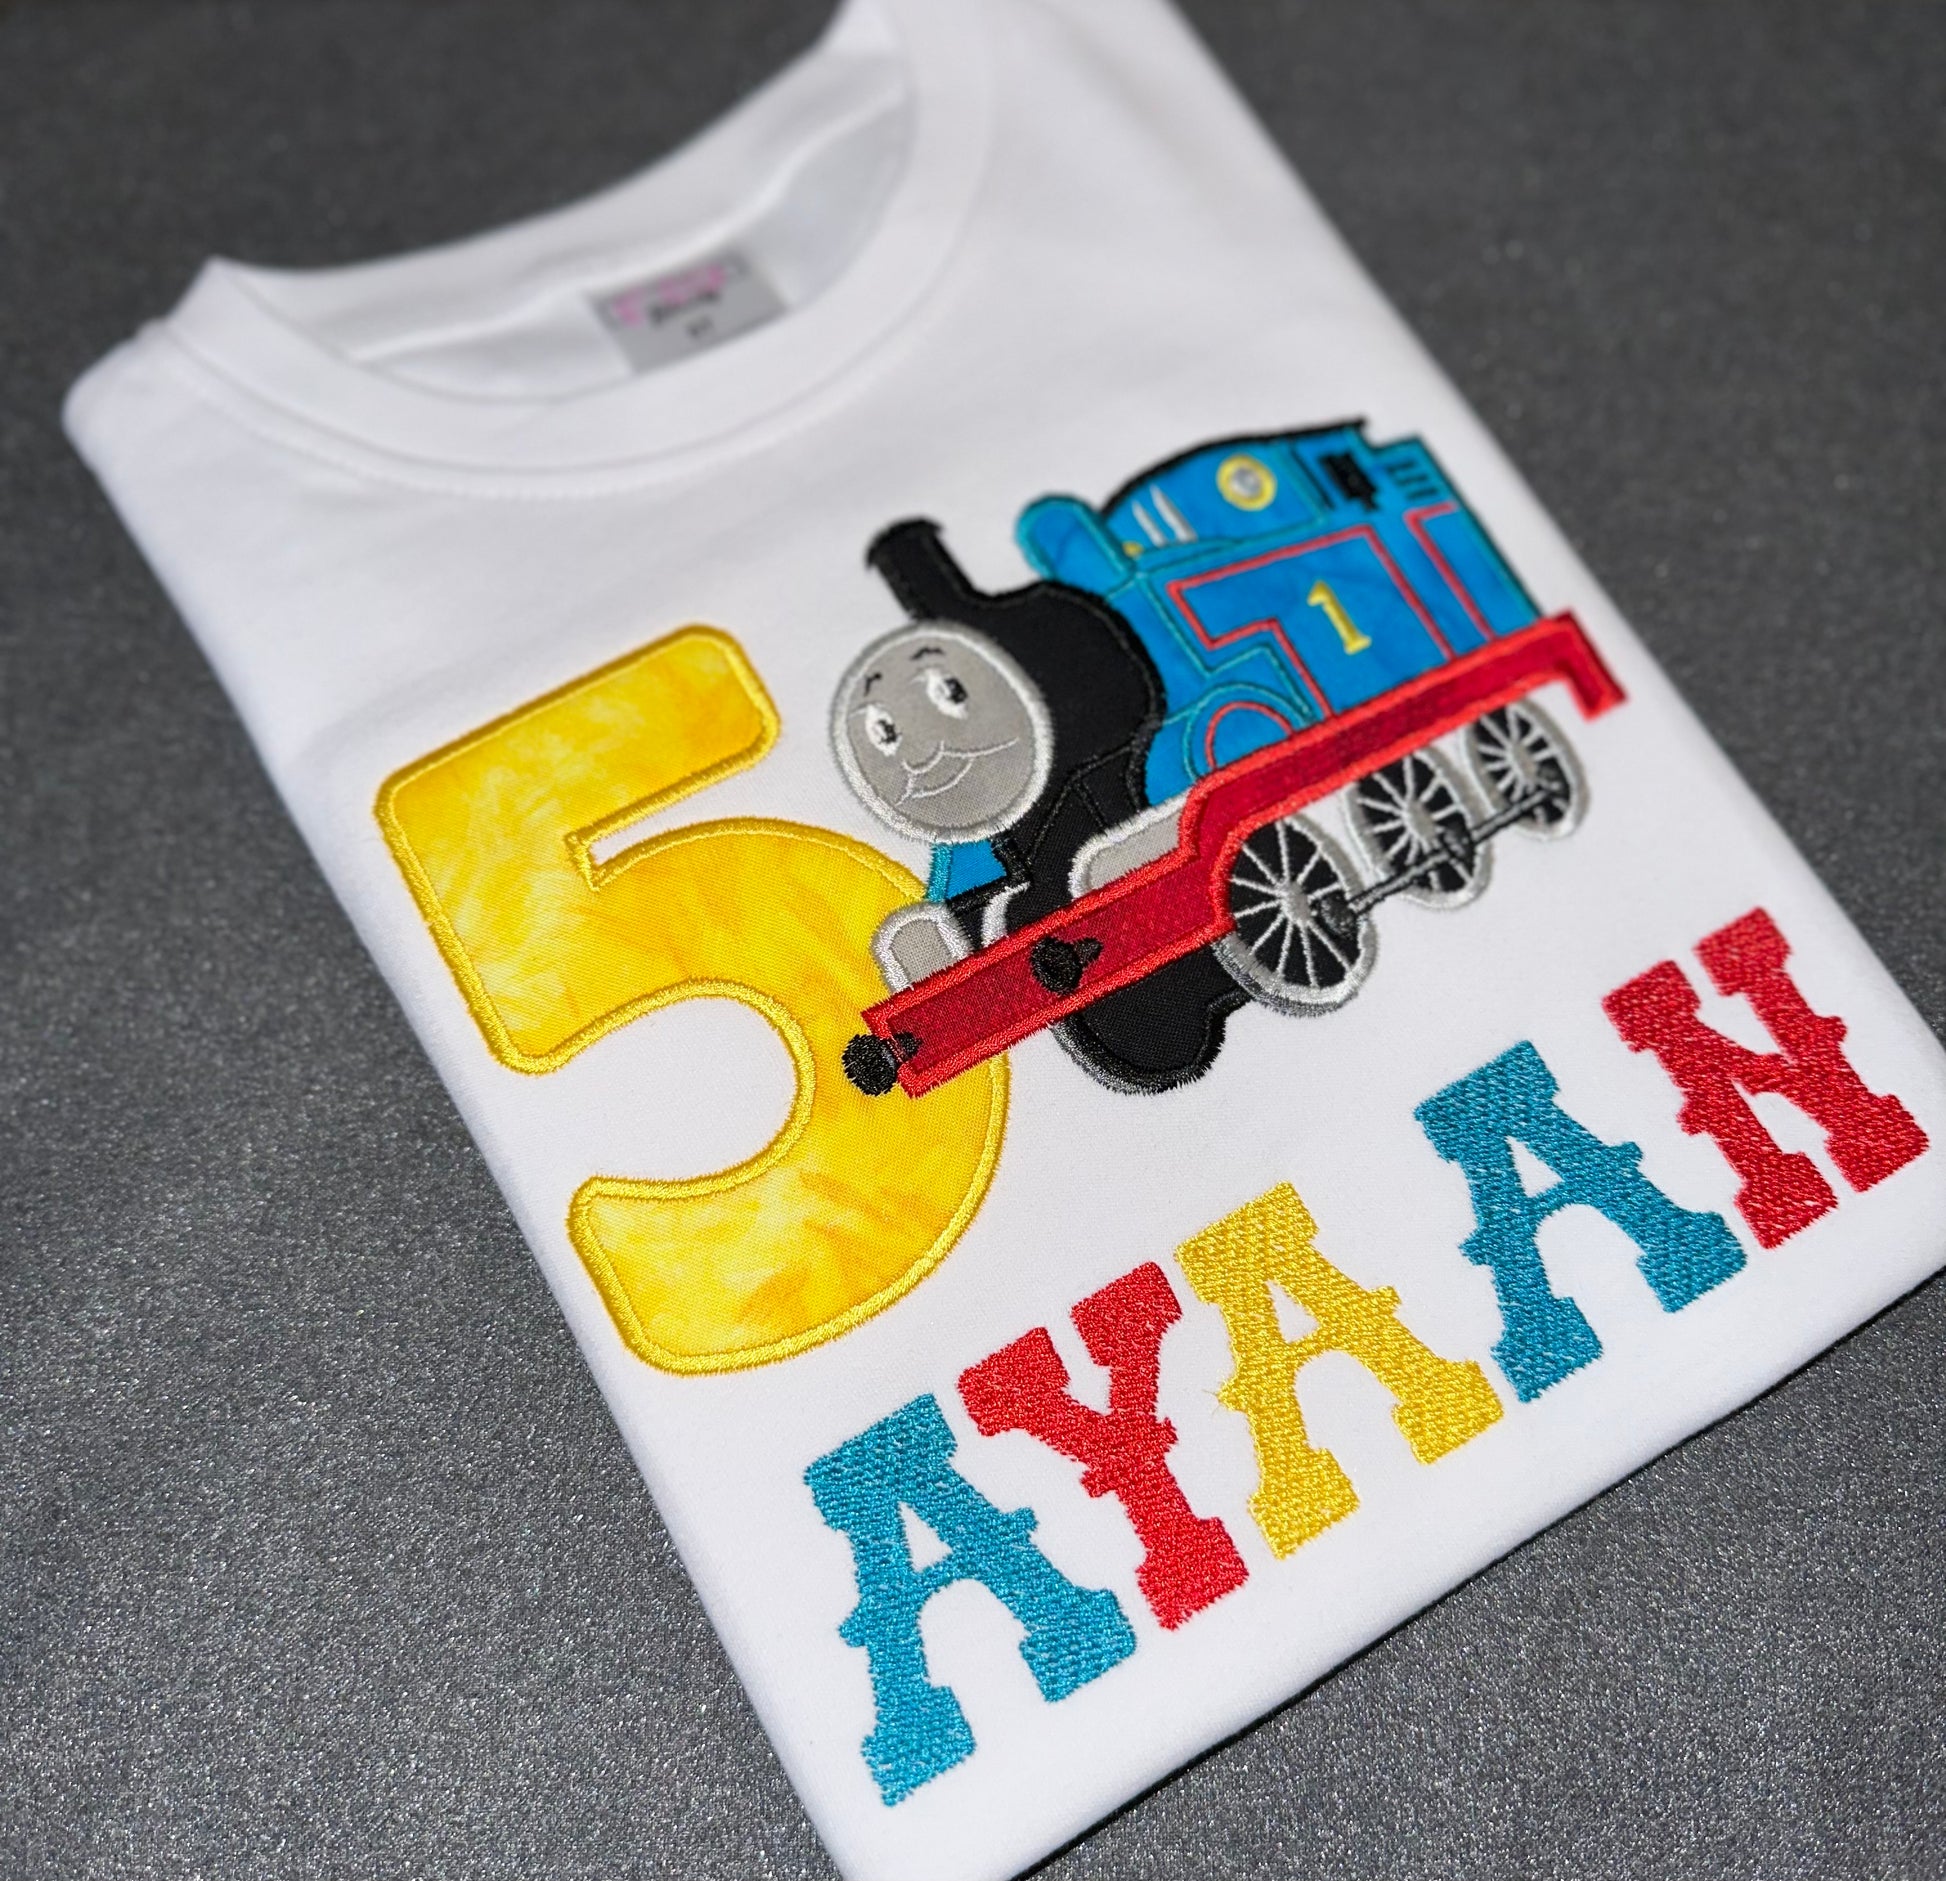 Thomas the train theme birthday shirt for boys. Embroidered on white crew neck